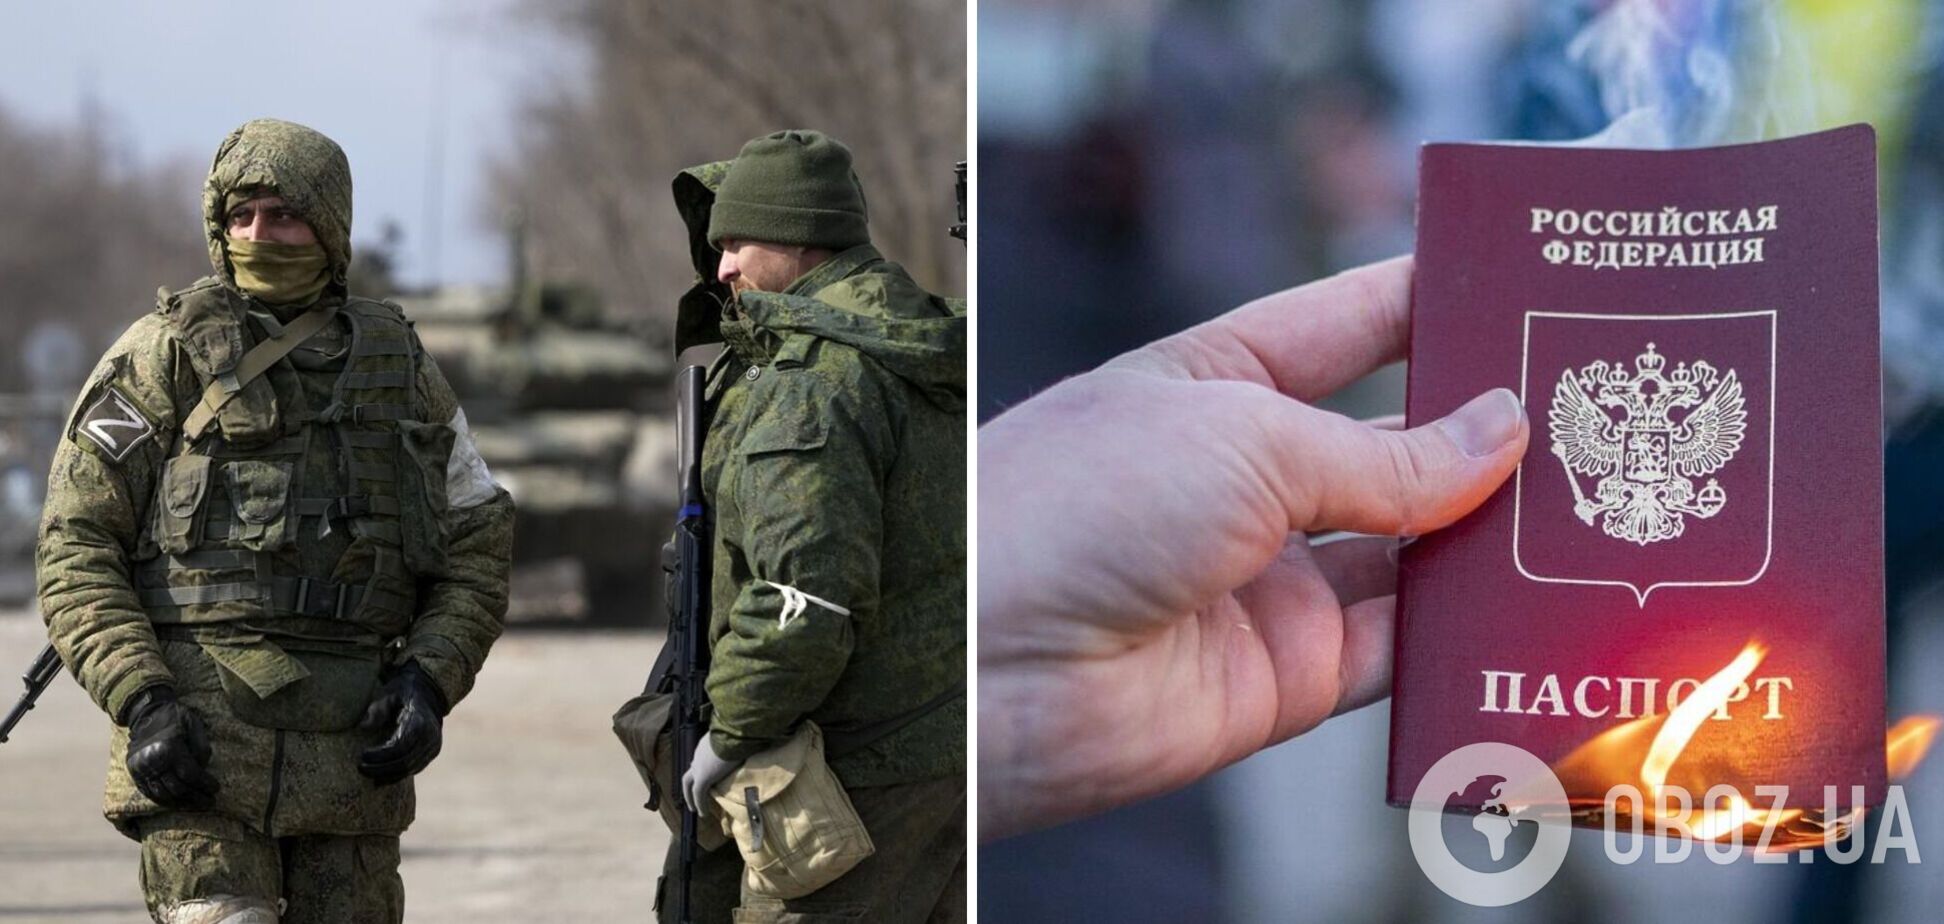 Росія роздає українцям паспорти, щоб 'узаконити' репресії, це гібридна зброя окупантів, – Маляр